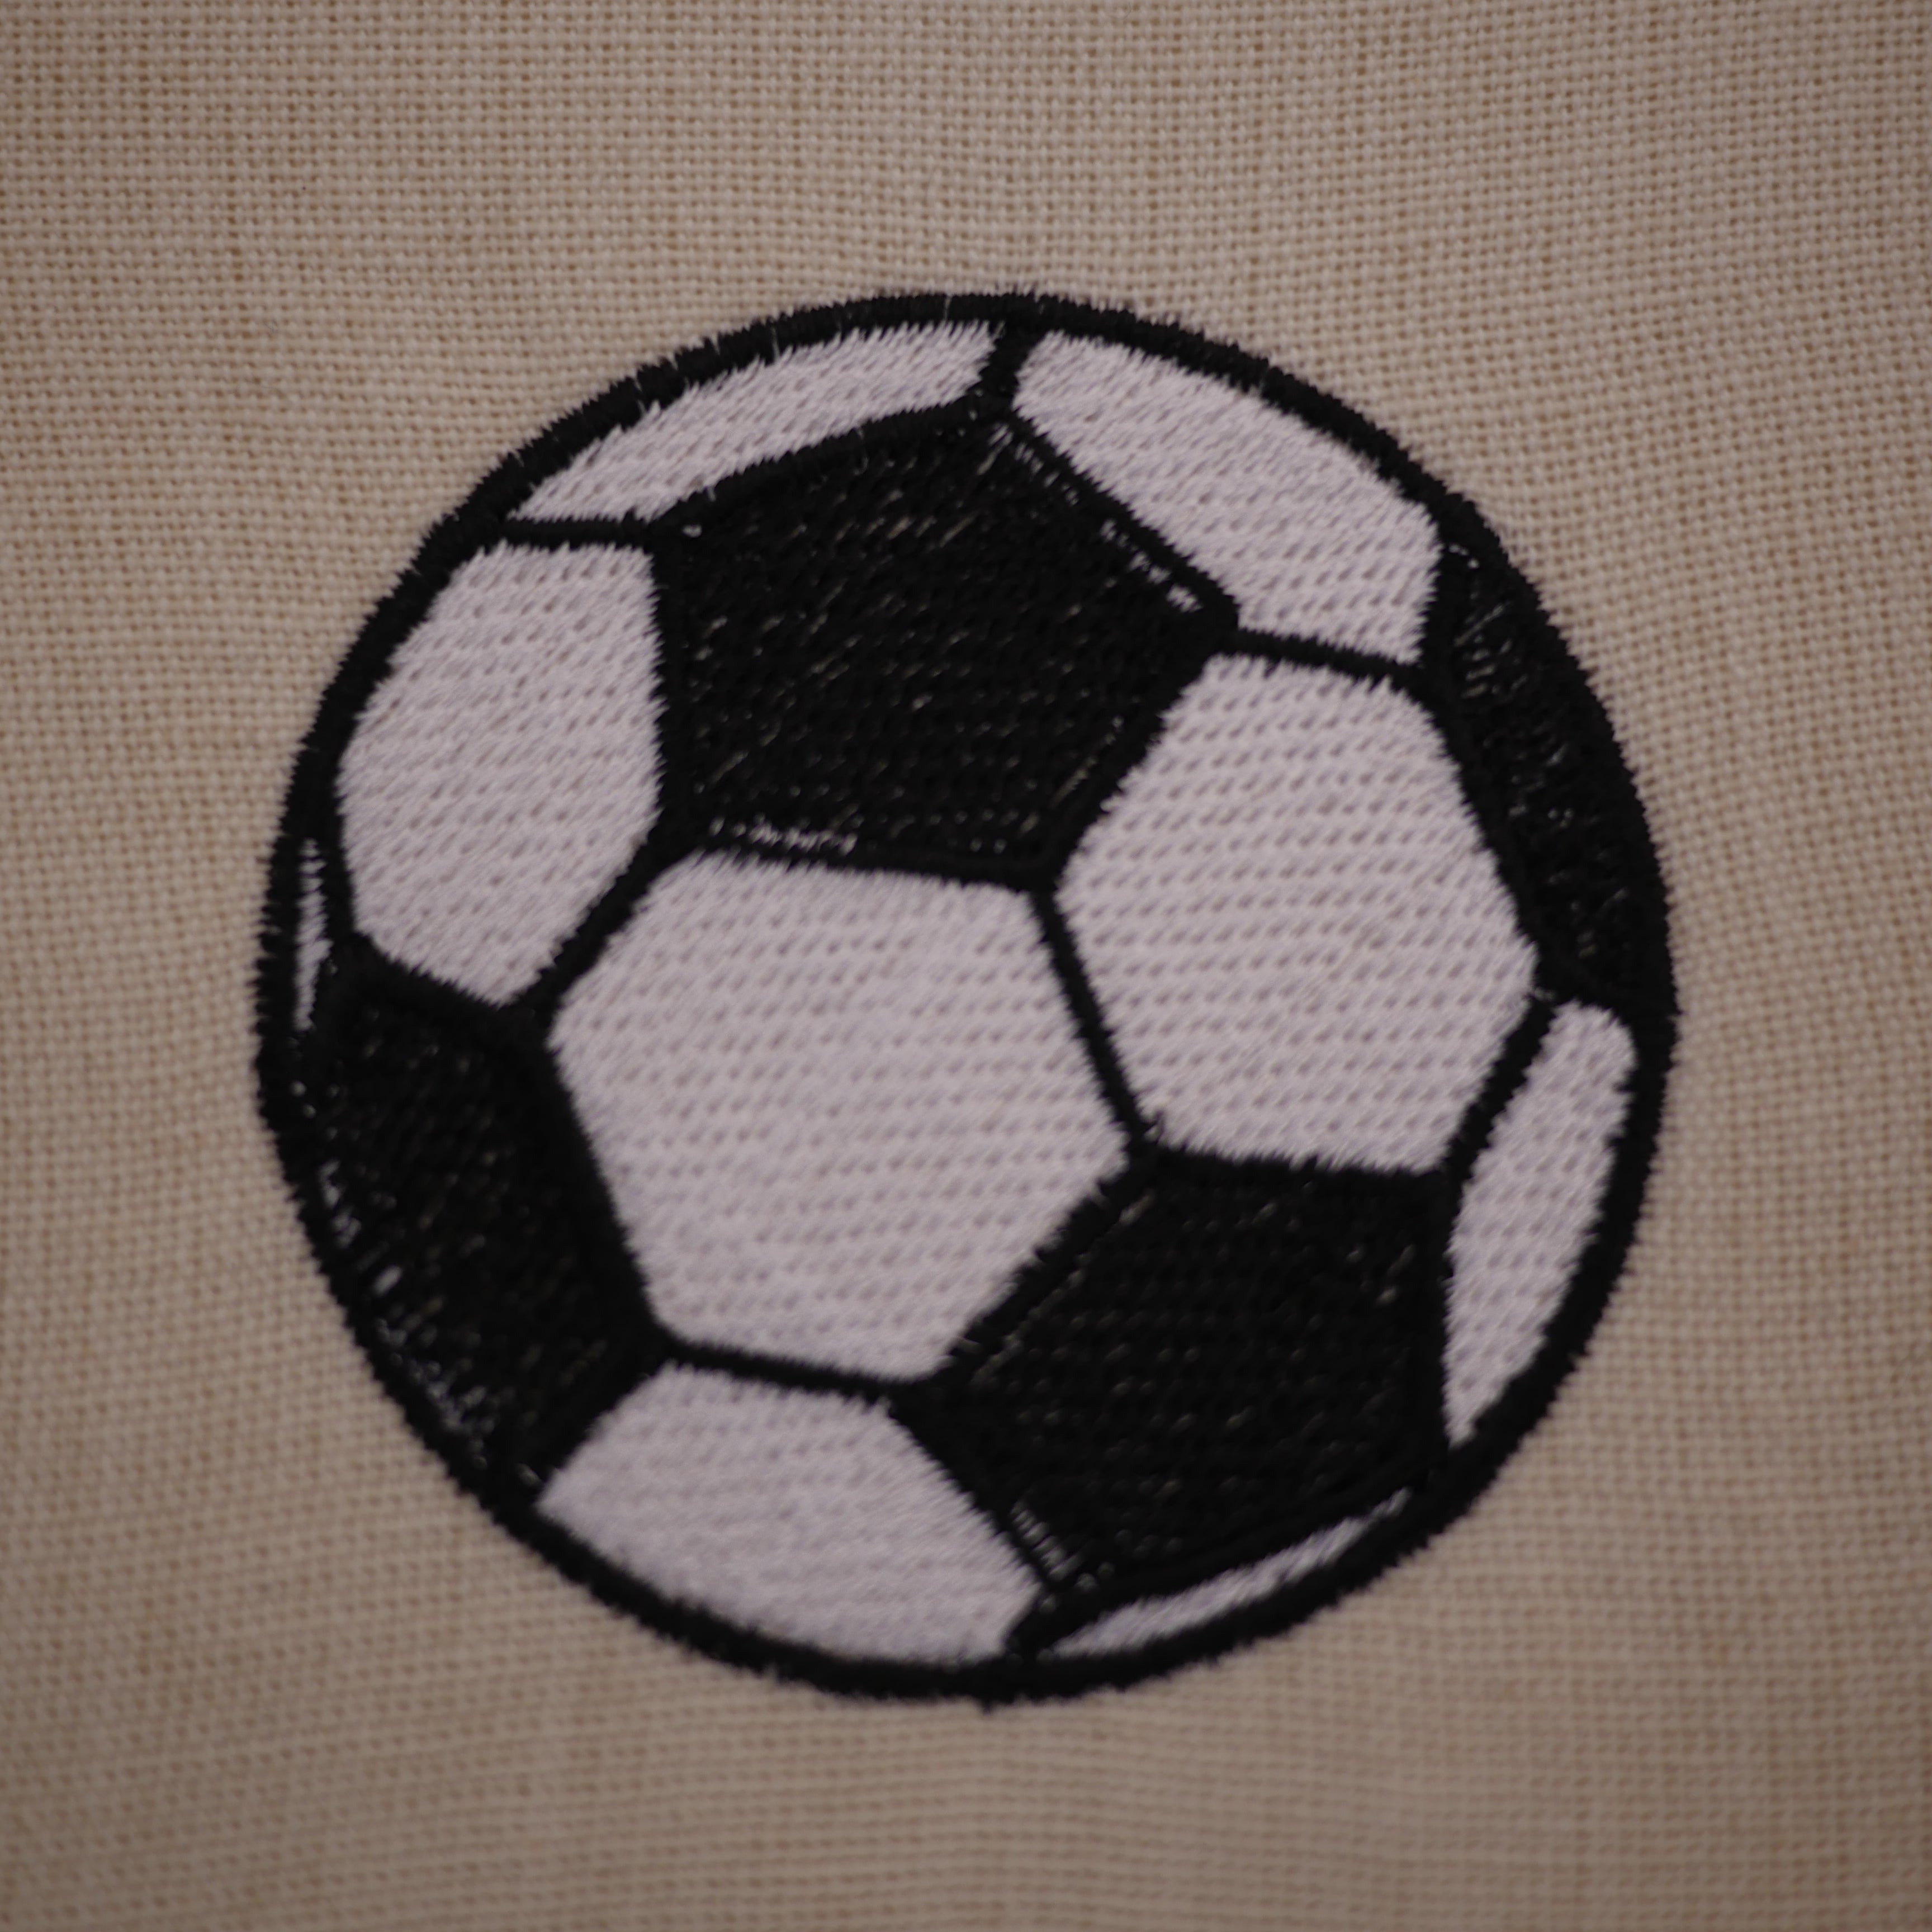 Soccer Ball Design